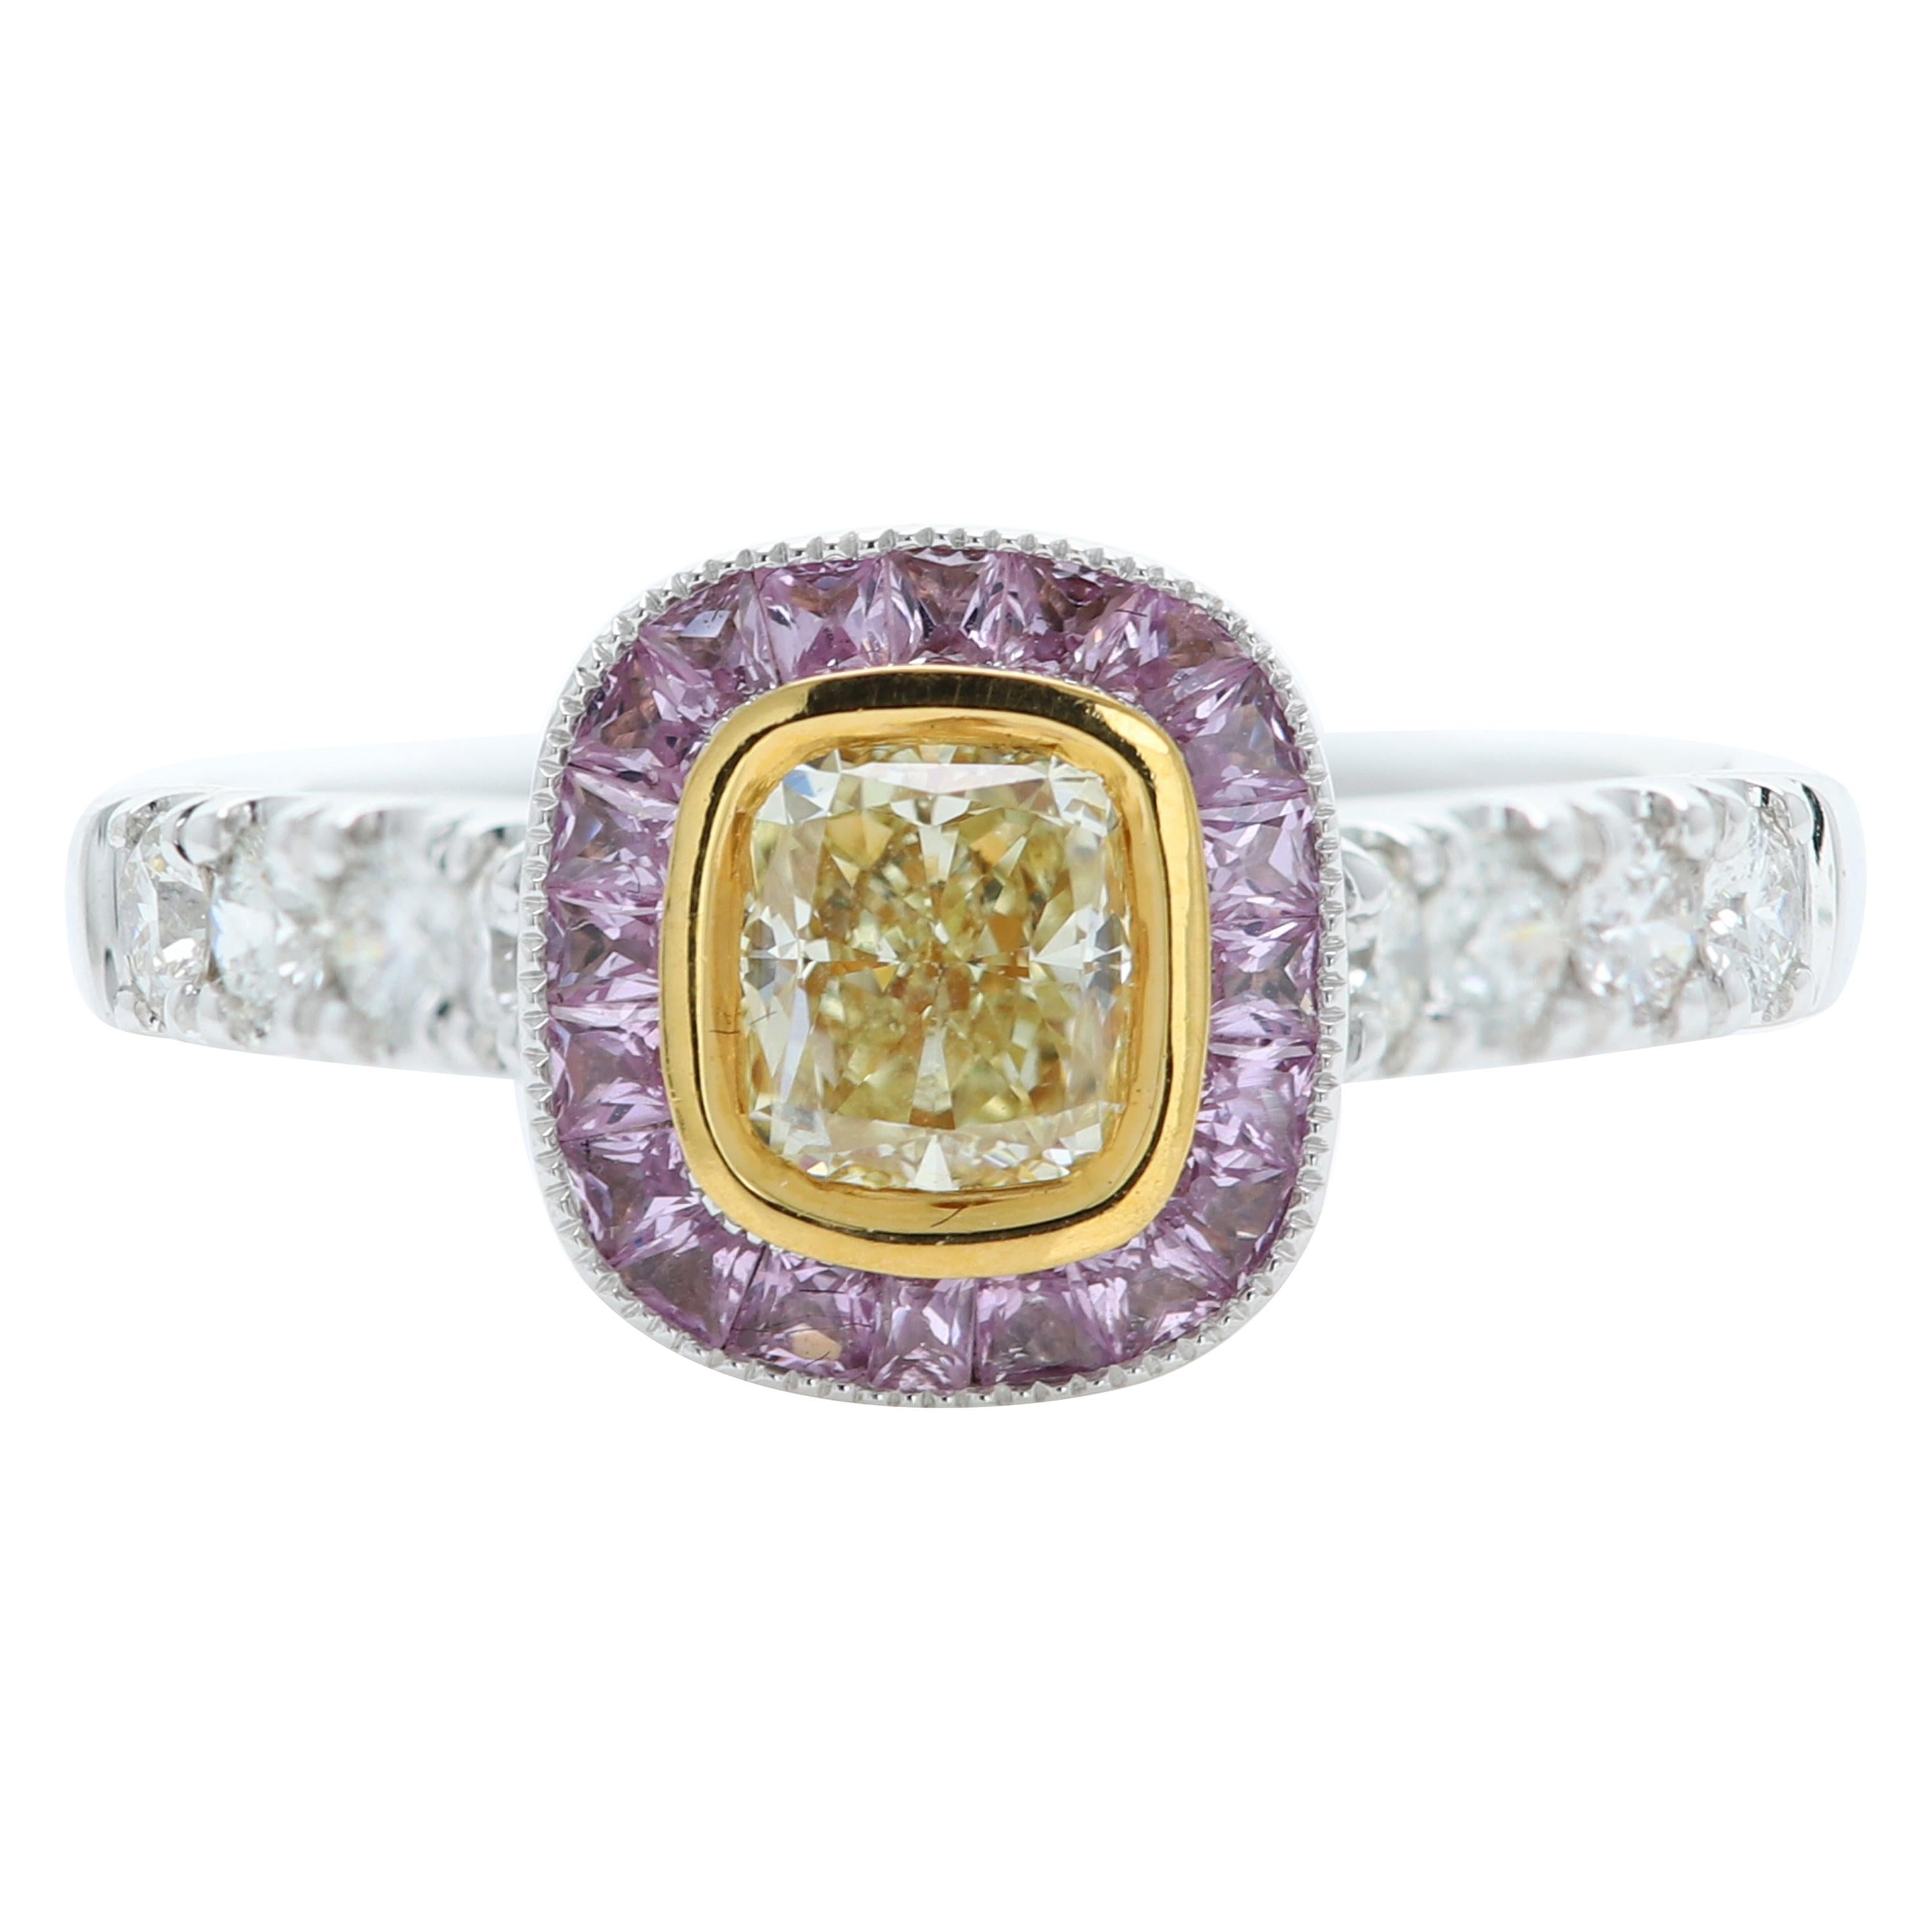 Bague en or bicolore 18 carats et diamants avec diamants jaunes et saphirs violets